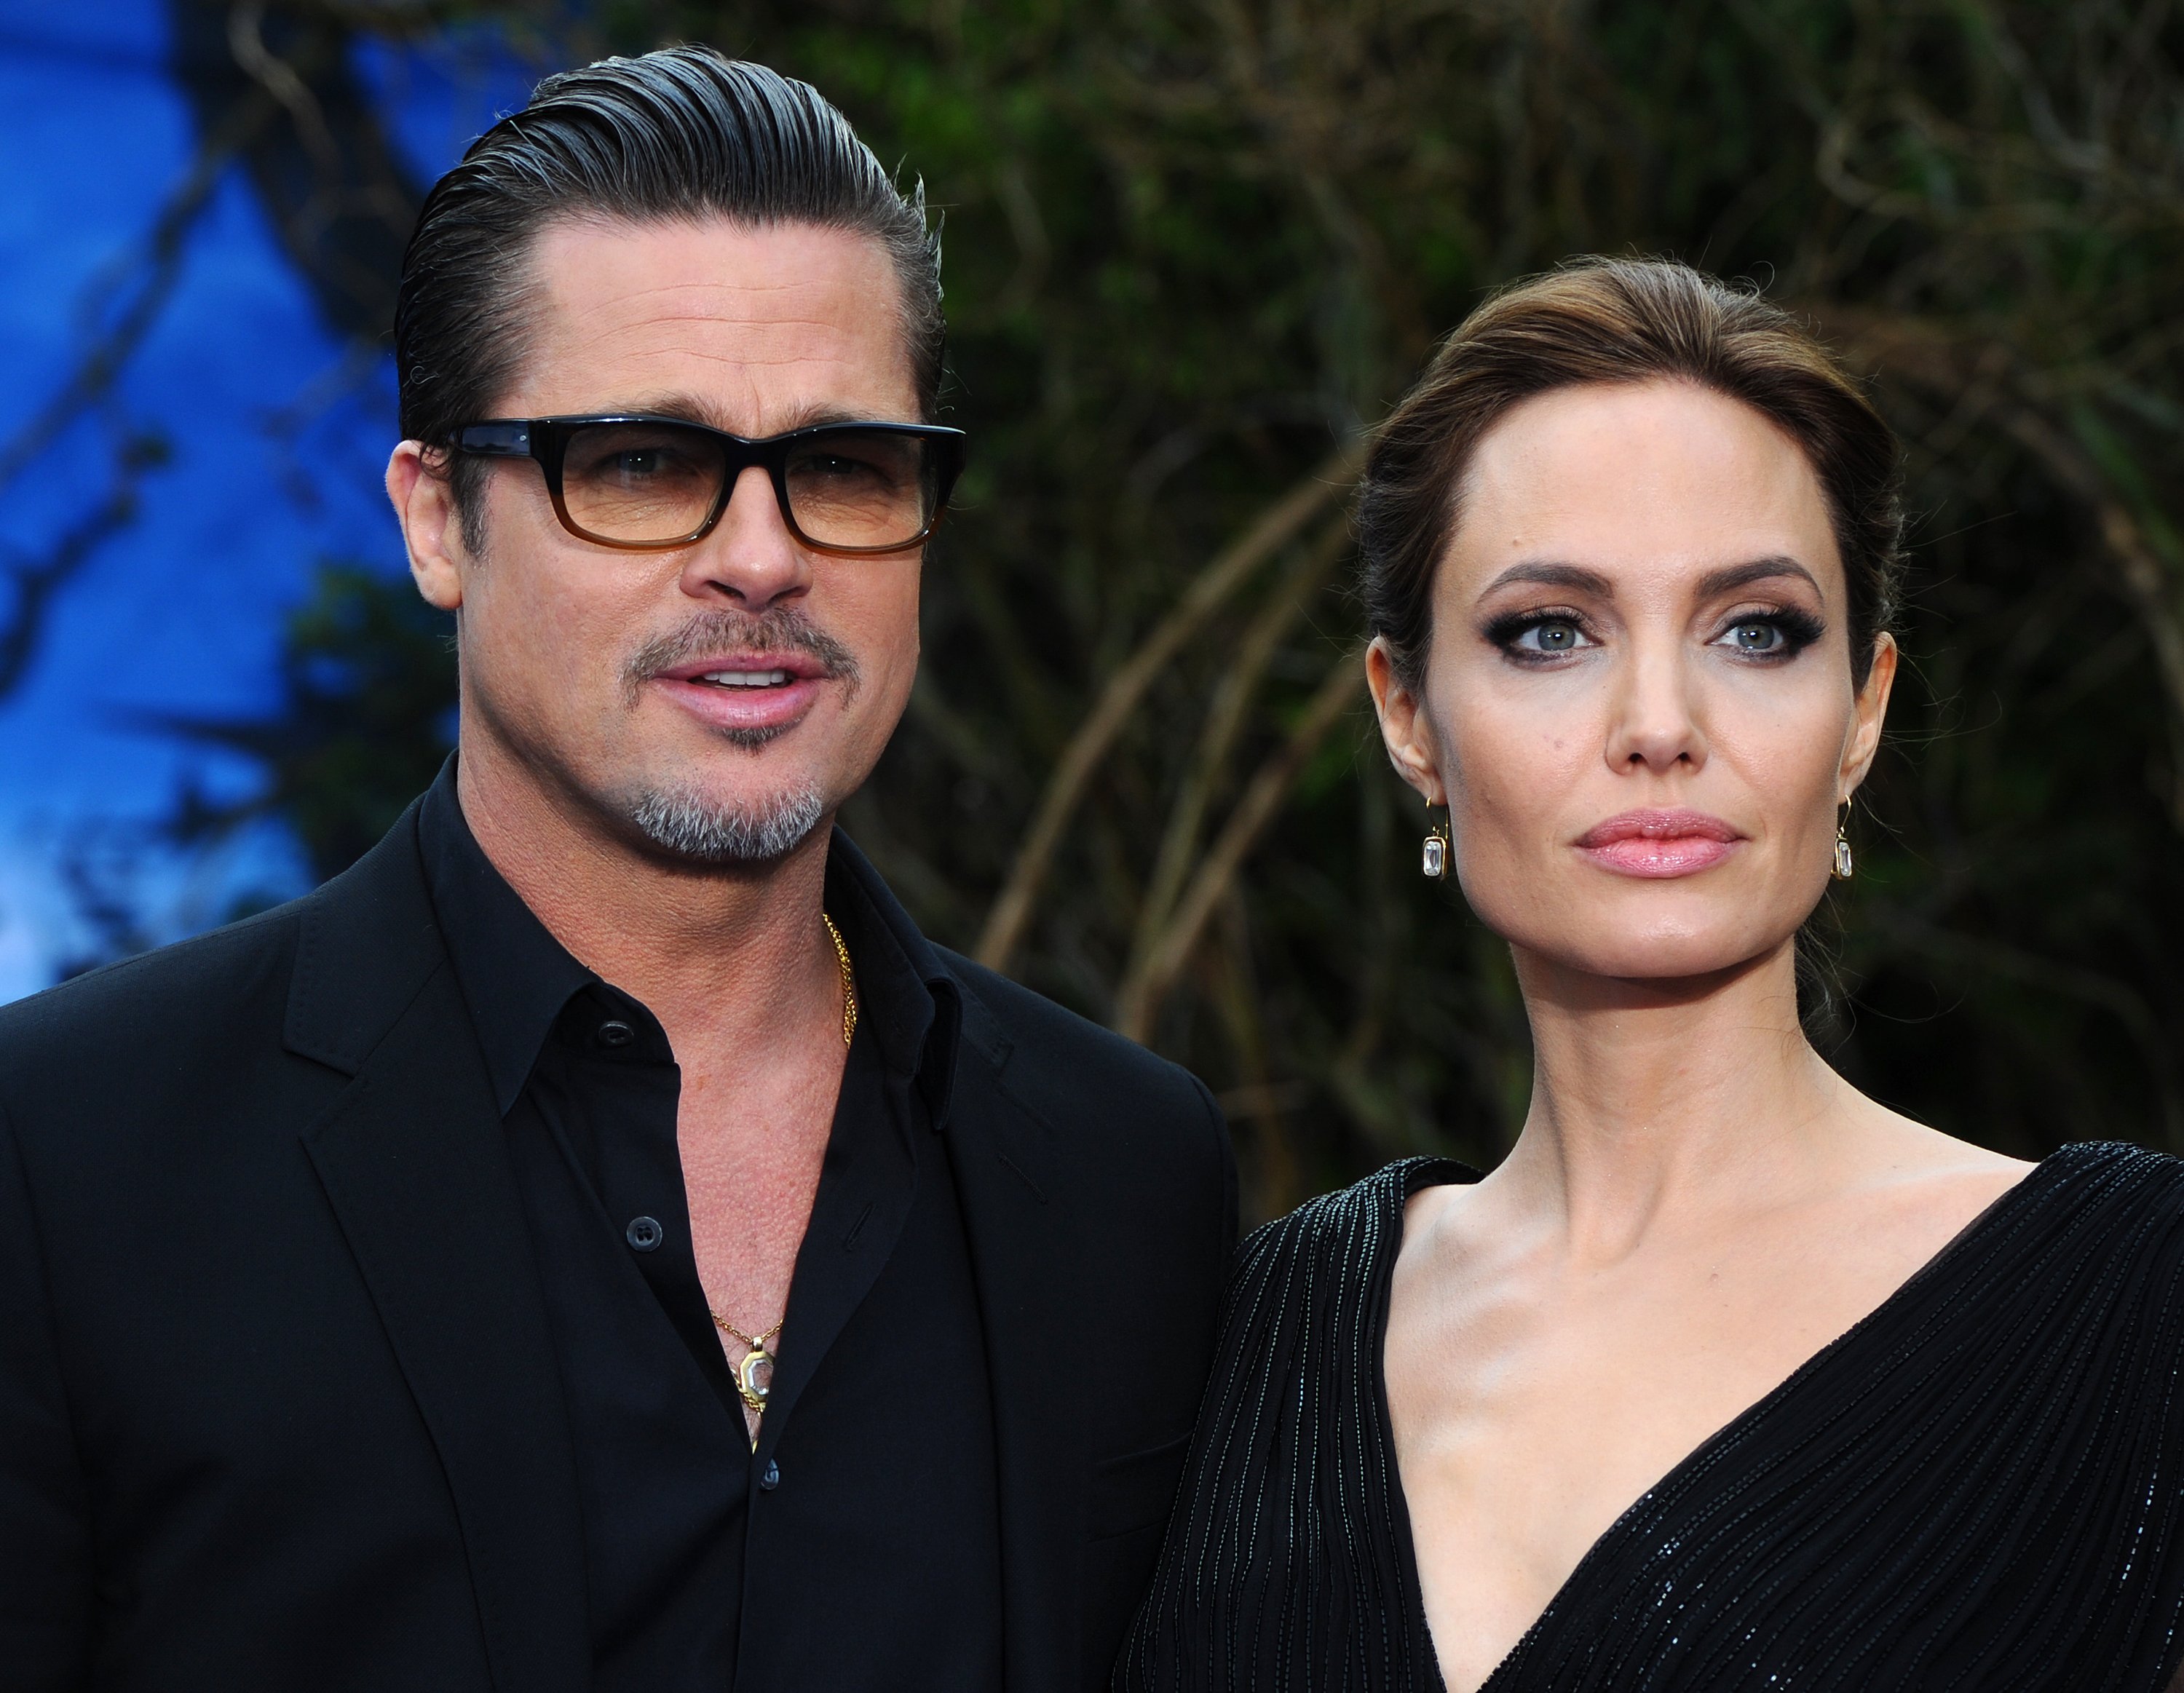 Brad Pitt y Angelina Jolie en el Palacio de Kensington el 8 de mayo de 2014 en Londres, Inglaterra | Foto: Getty Images